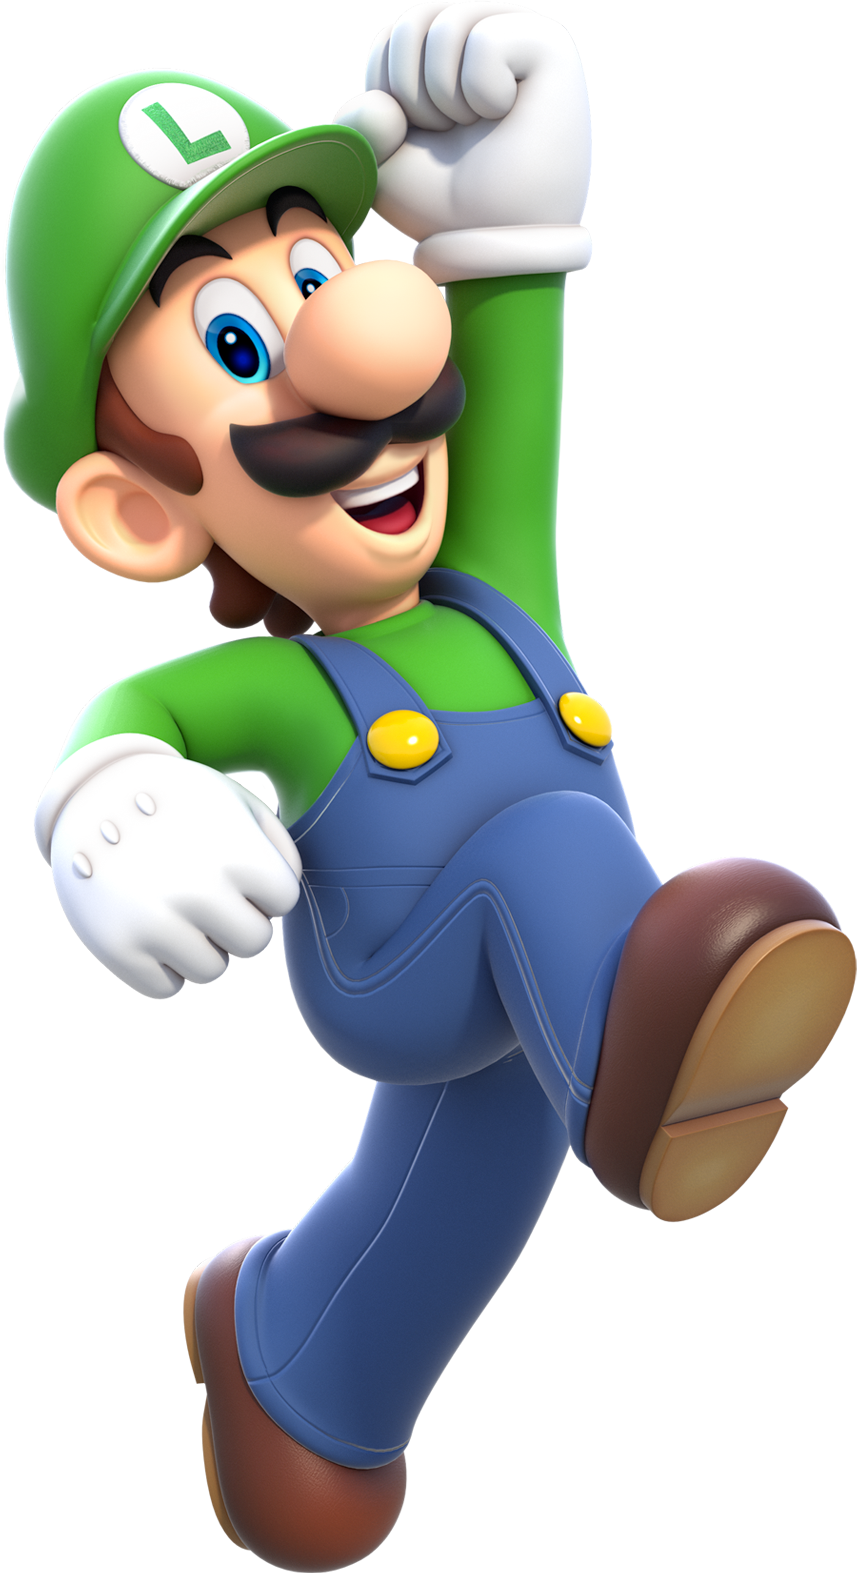 Luigi_Artwork_%28alt%29_-_Super_Mario_3D